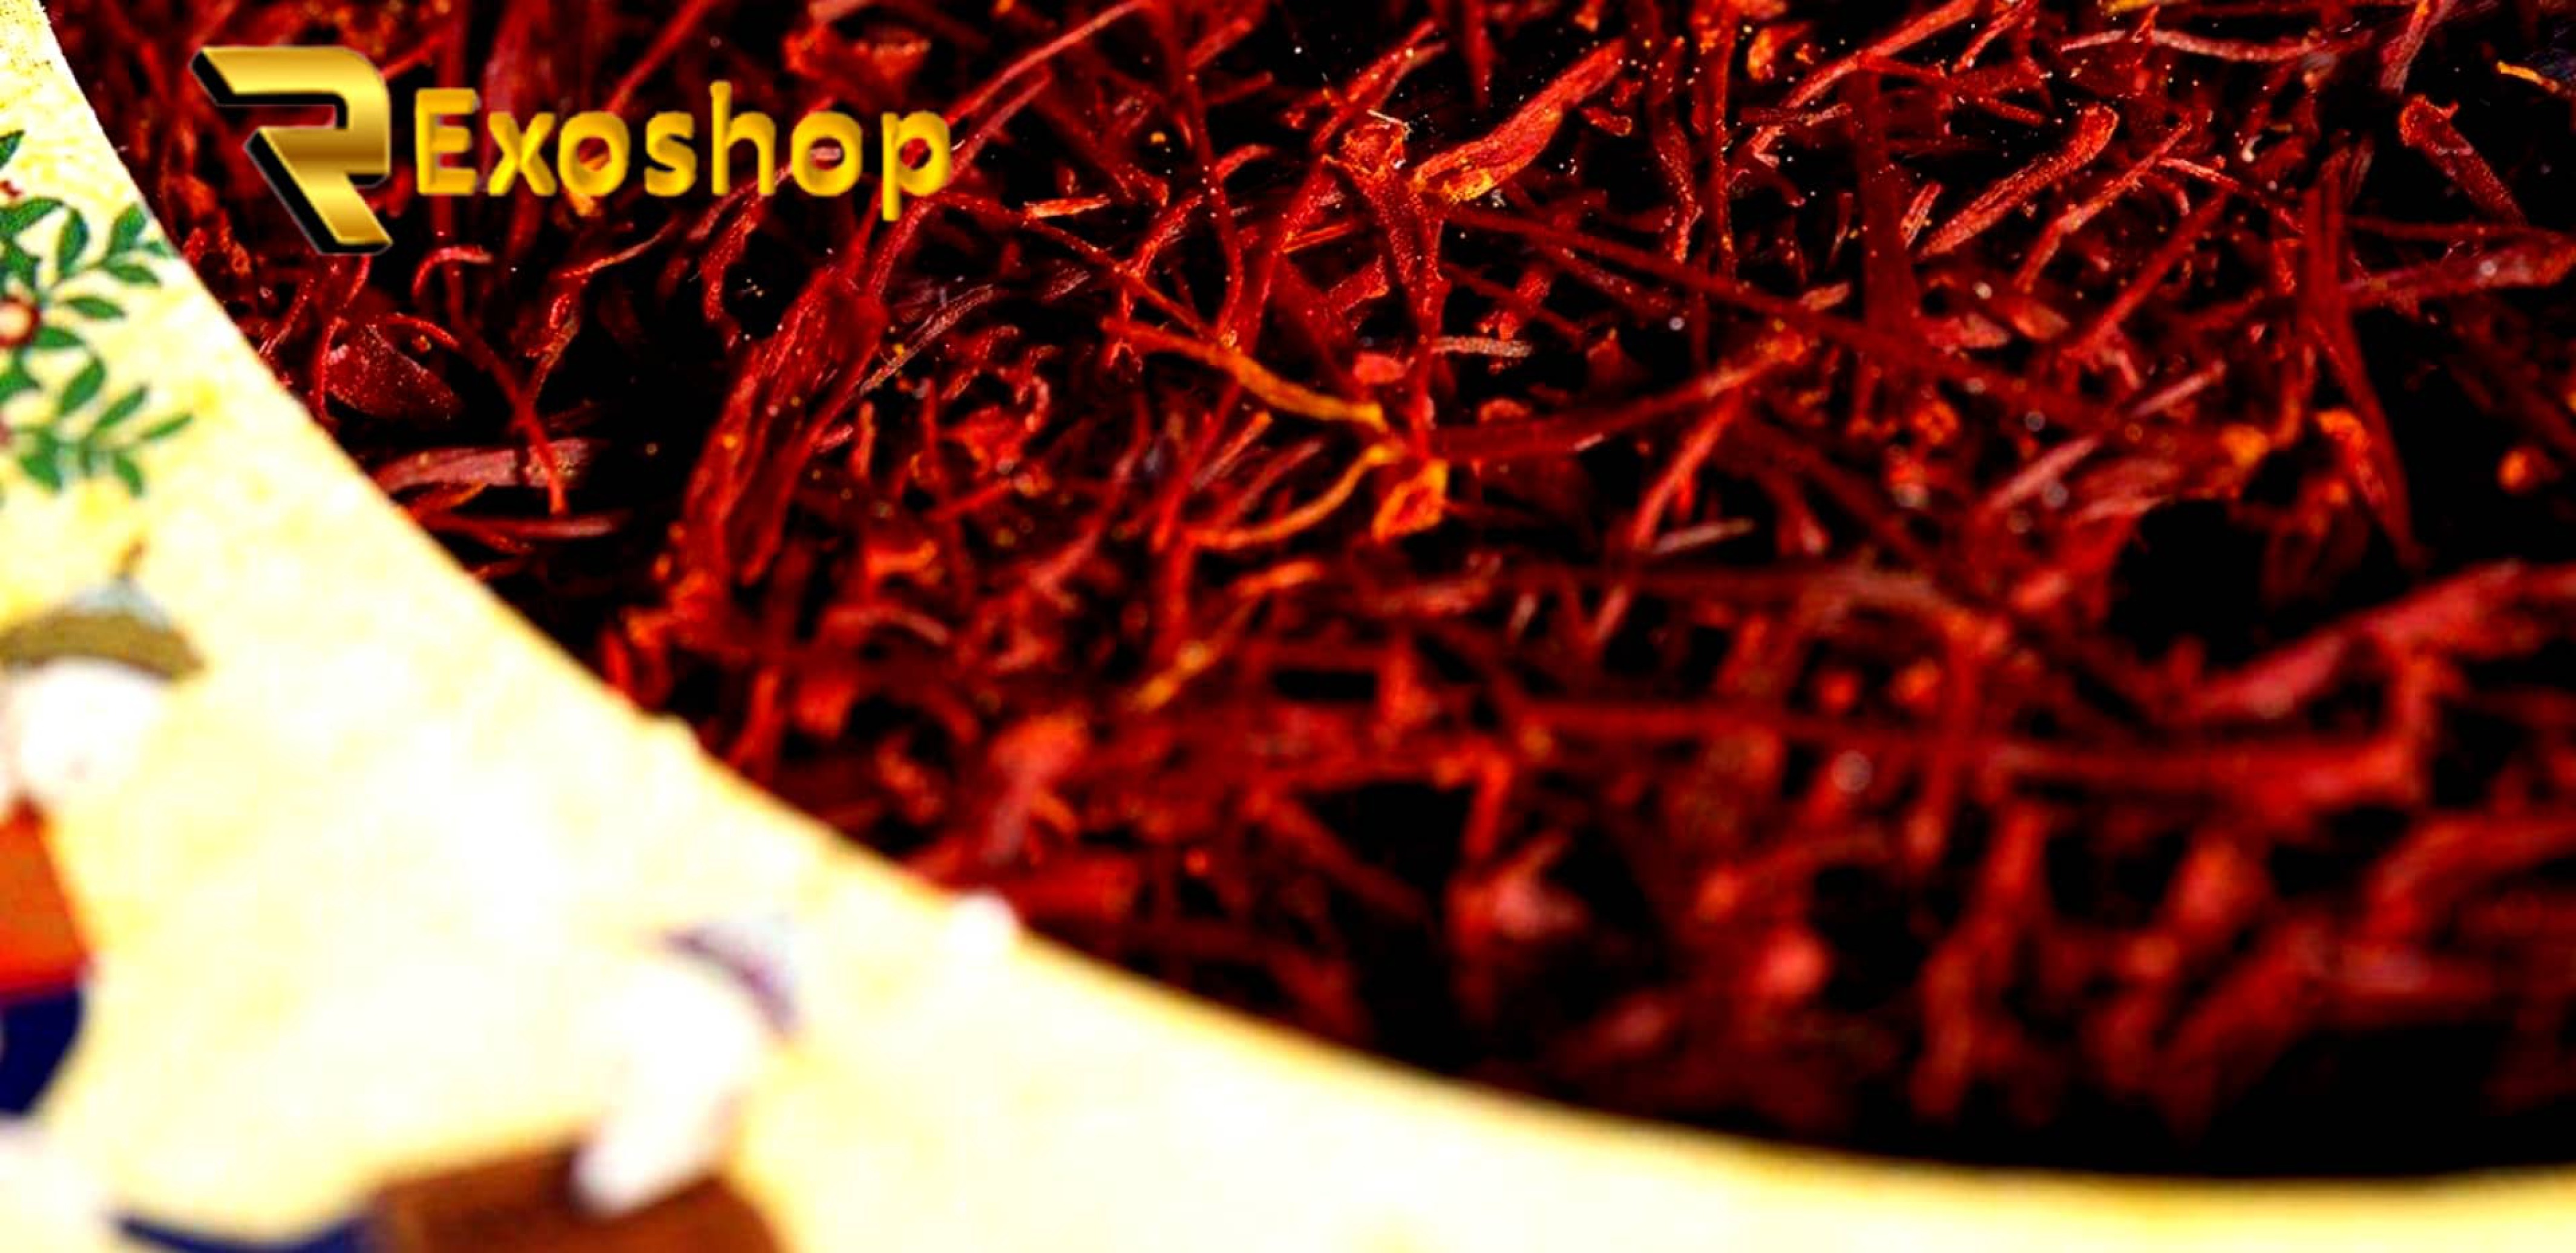  زعفران درجه یک ممتاز مقدار 4 گرمی با رنگ دهی بسیار بالا و خوش عطر کردن غذا و بوی دلنشین در فروشگاه رکسوشاپ موجود می باشد 